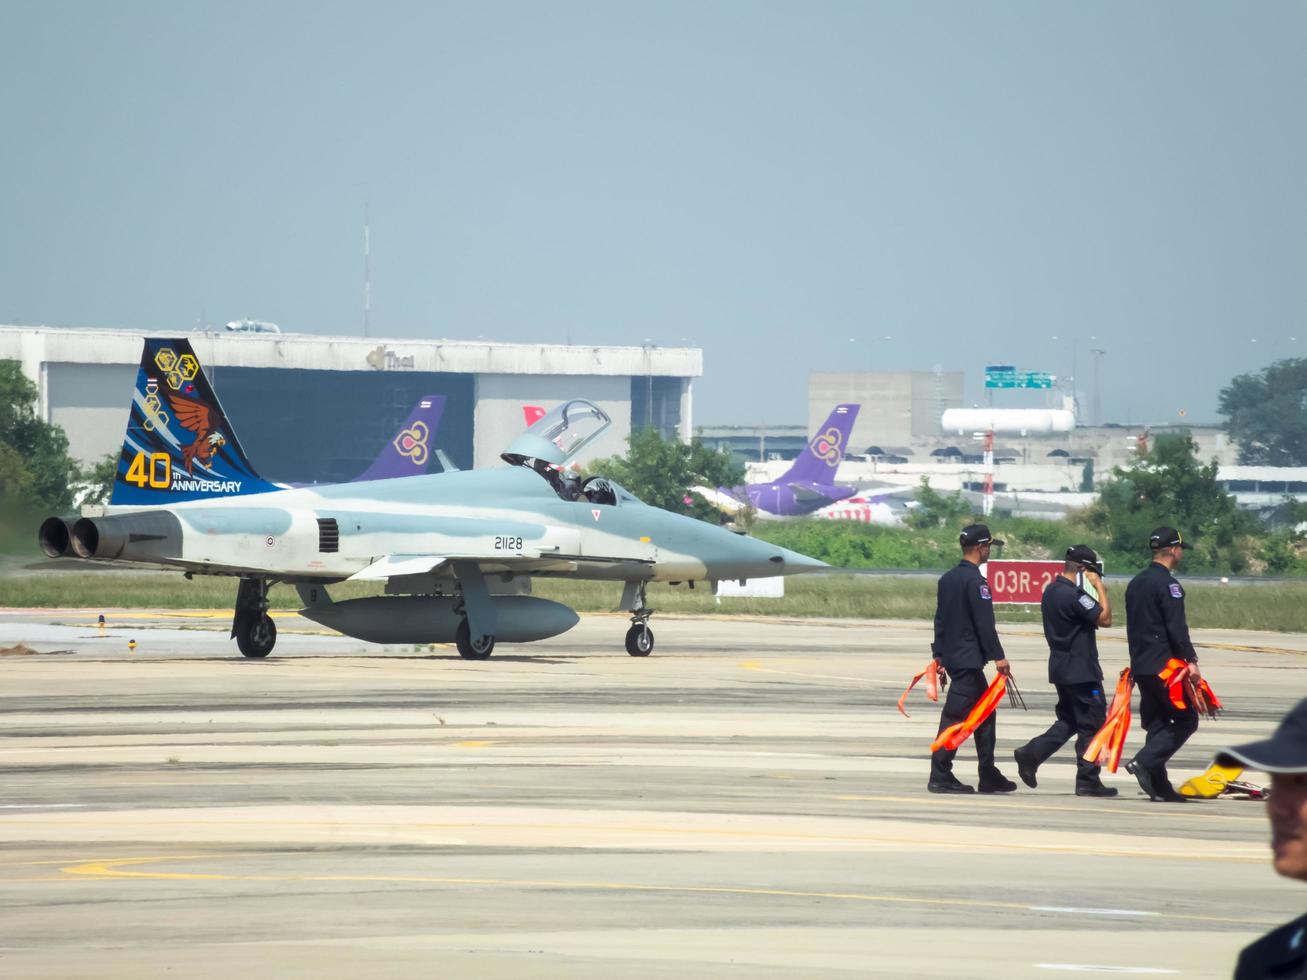 armée de l'air royale thaïlandaise don muang bangkok thaïlande12 janvier 2019journée nationale des enfants le spectacle aérien et le spectacle aérien de l'armée de l'air royale thaïlandaise. sur bangkok thailand12 janvier 2019. photo